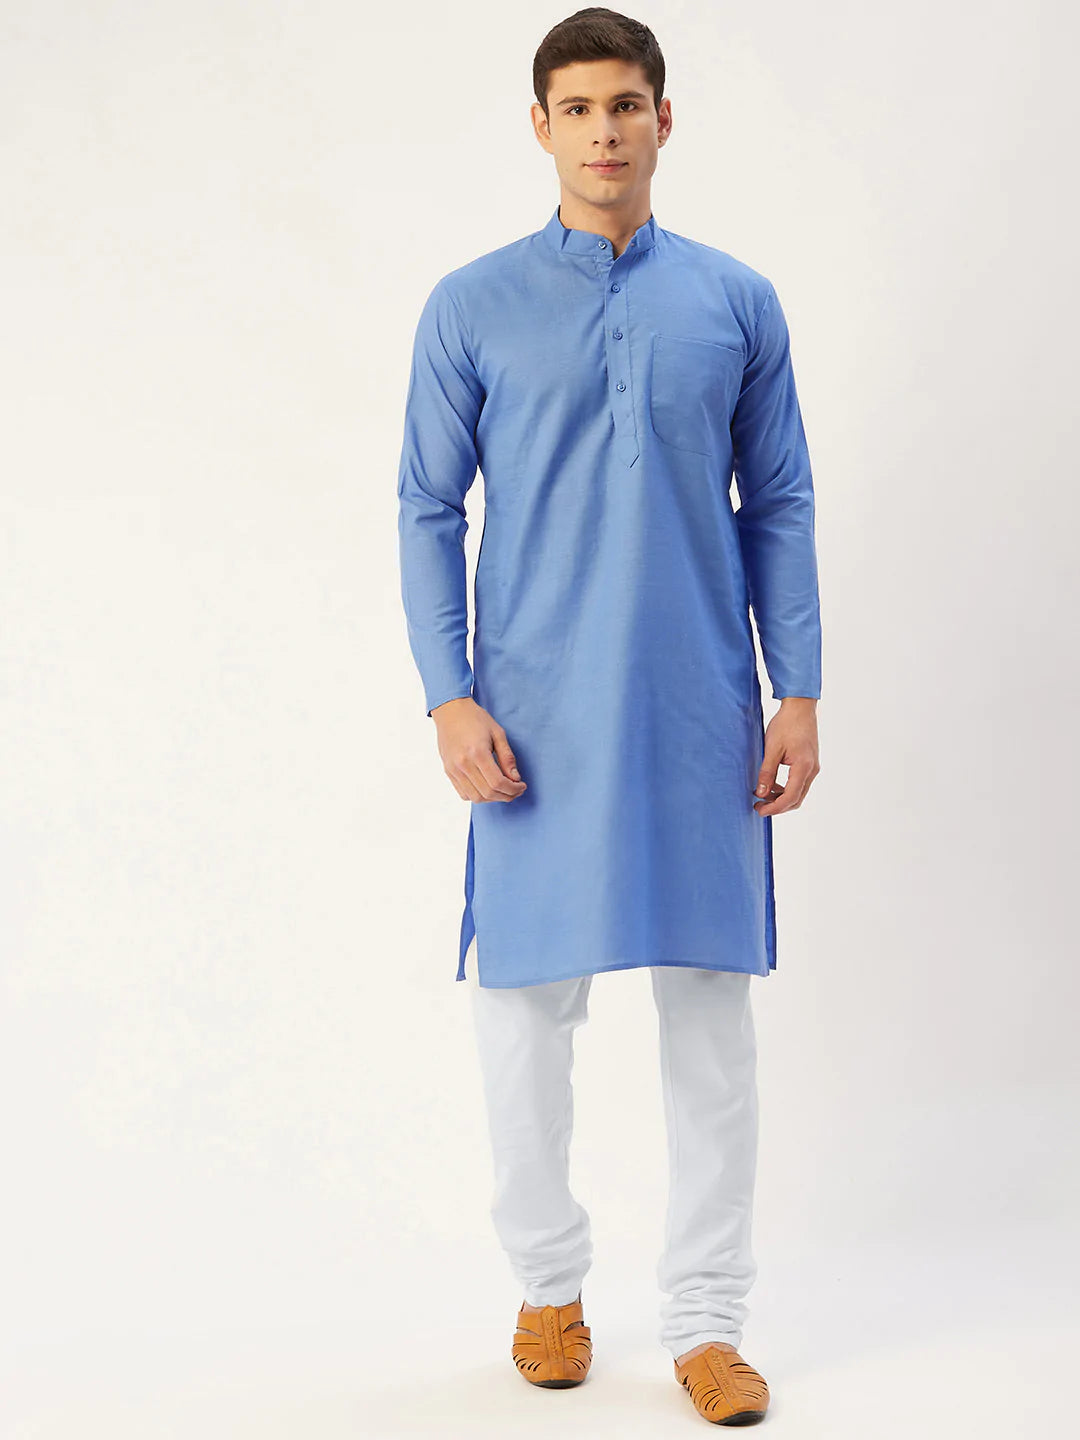 Jompers Men's Blue Cotton Solid Kurta Pyjama ( JOKP 611 Blue )